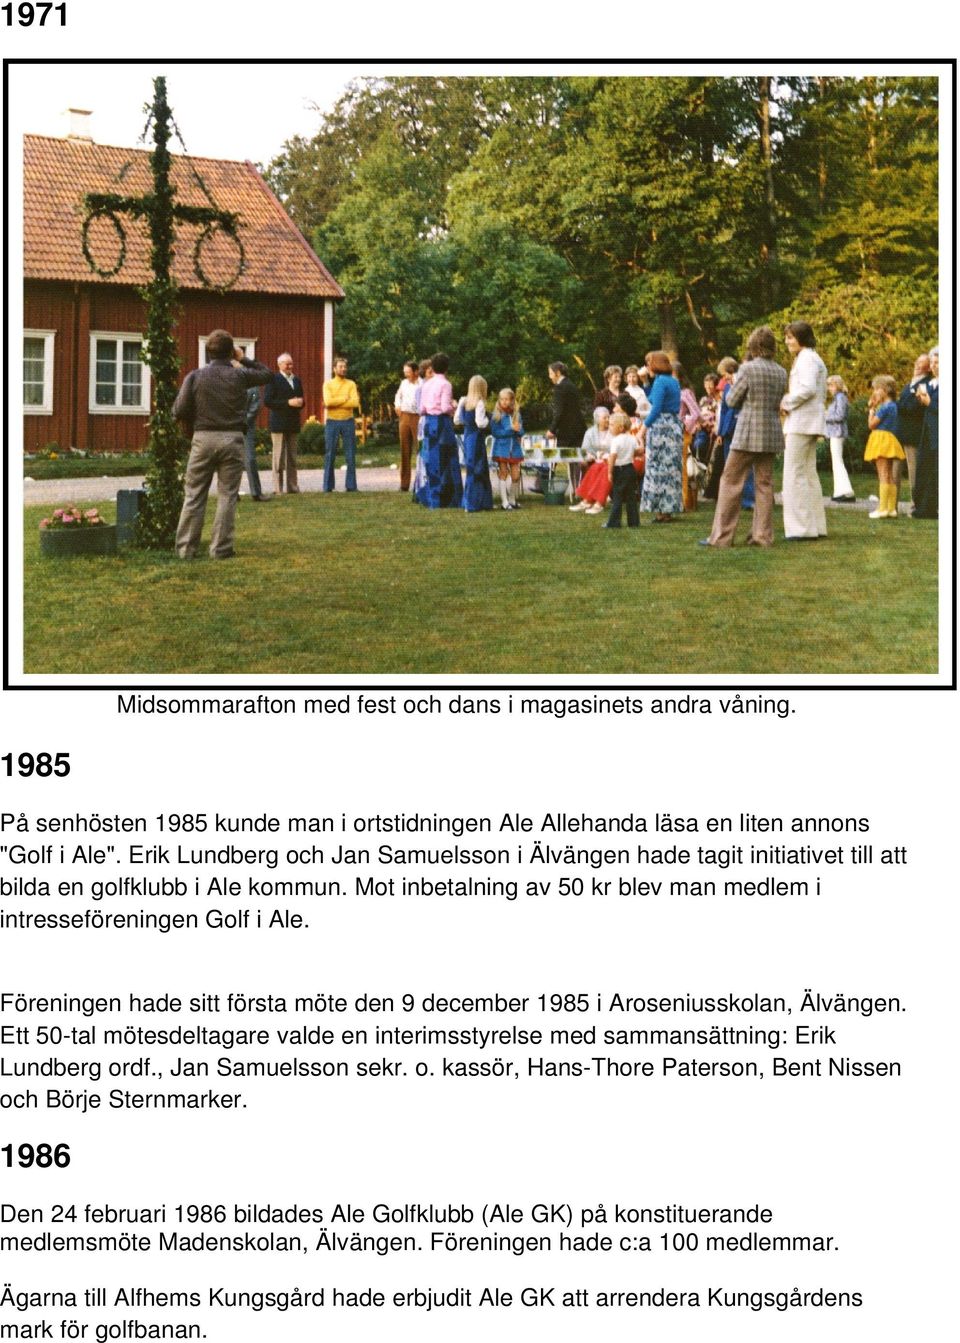 Föreningen hade sitt första möte den 9 december 1985 i Aroseniusskolan, Älvängen. Ett 50-tal mötesdeltagare valde en interimsstyrelse med sammansättning: Erik Lundberg or